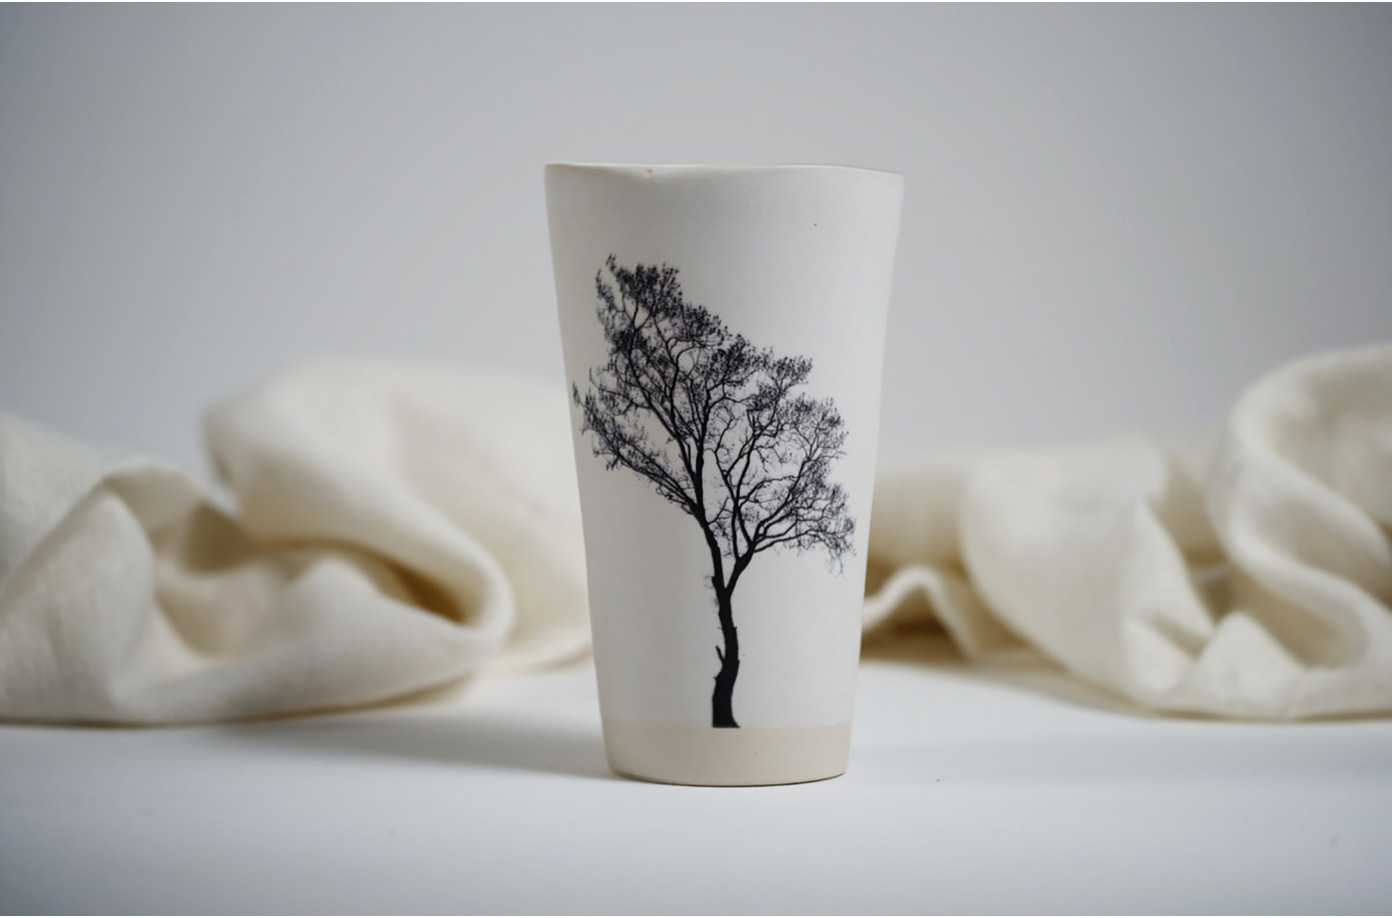 original contemporary design ceramic mugs, bowls. artistic tableware